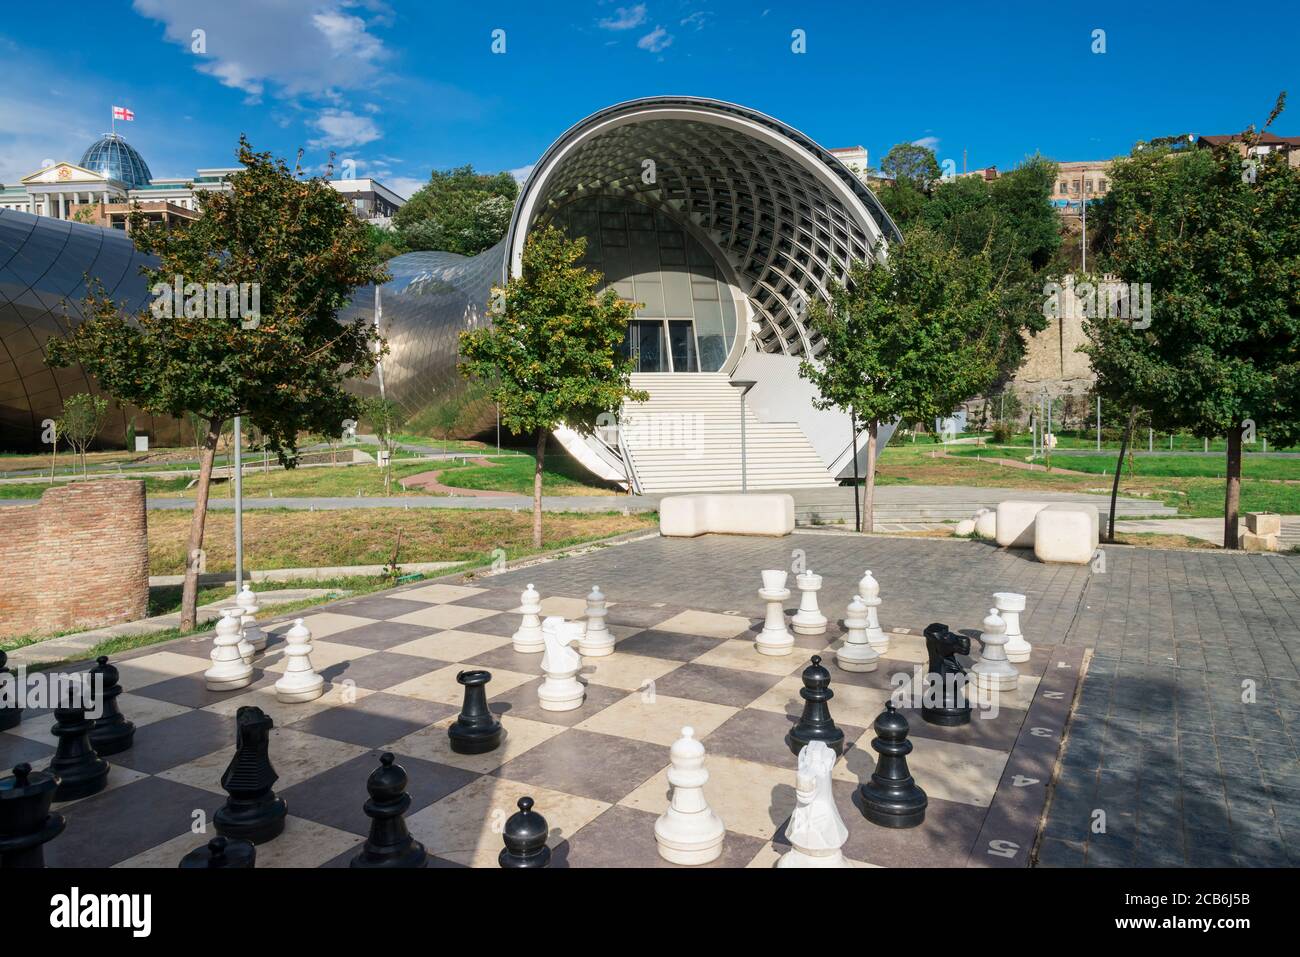 Jeu d'échecs géant en face de la salle de concert et d'exposition, Rike Parc, Tbilissi, Géorgie, Caucase, Moyen-Orient, Asie Banque D'Images